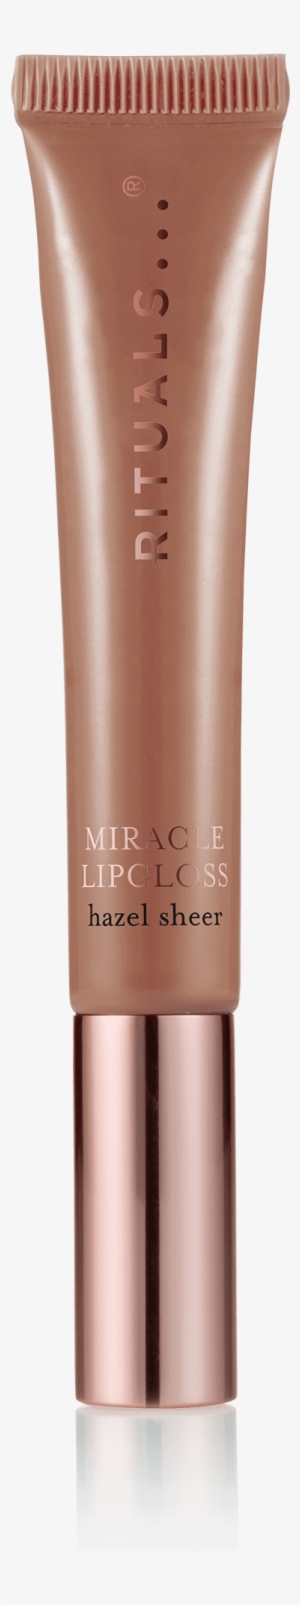 Miracle Lipgloss - Hazel Sheer - Lip Gloss